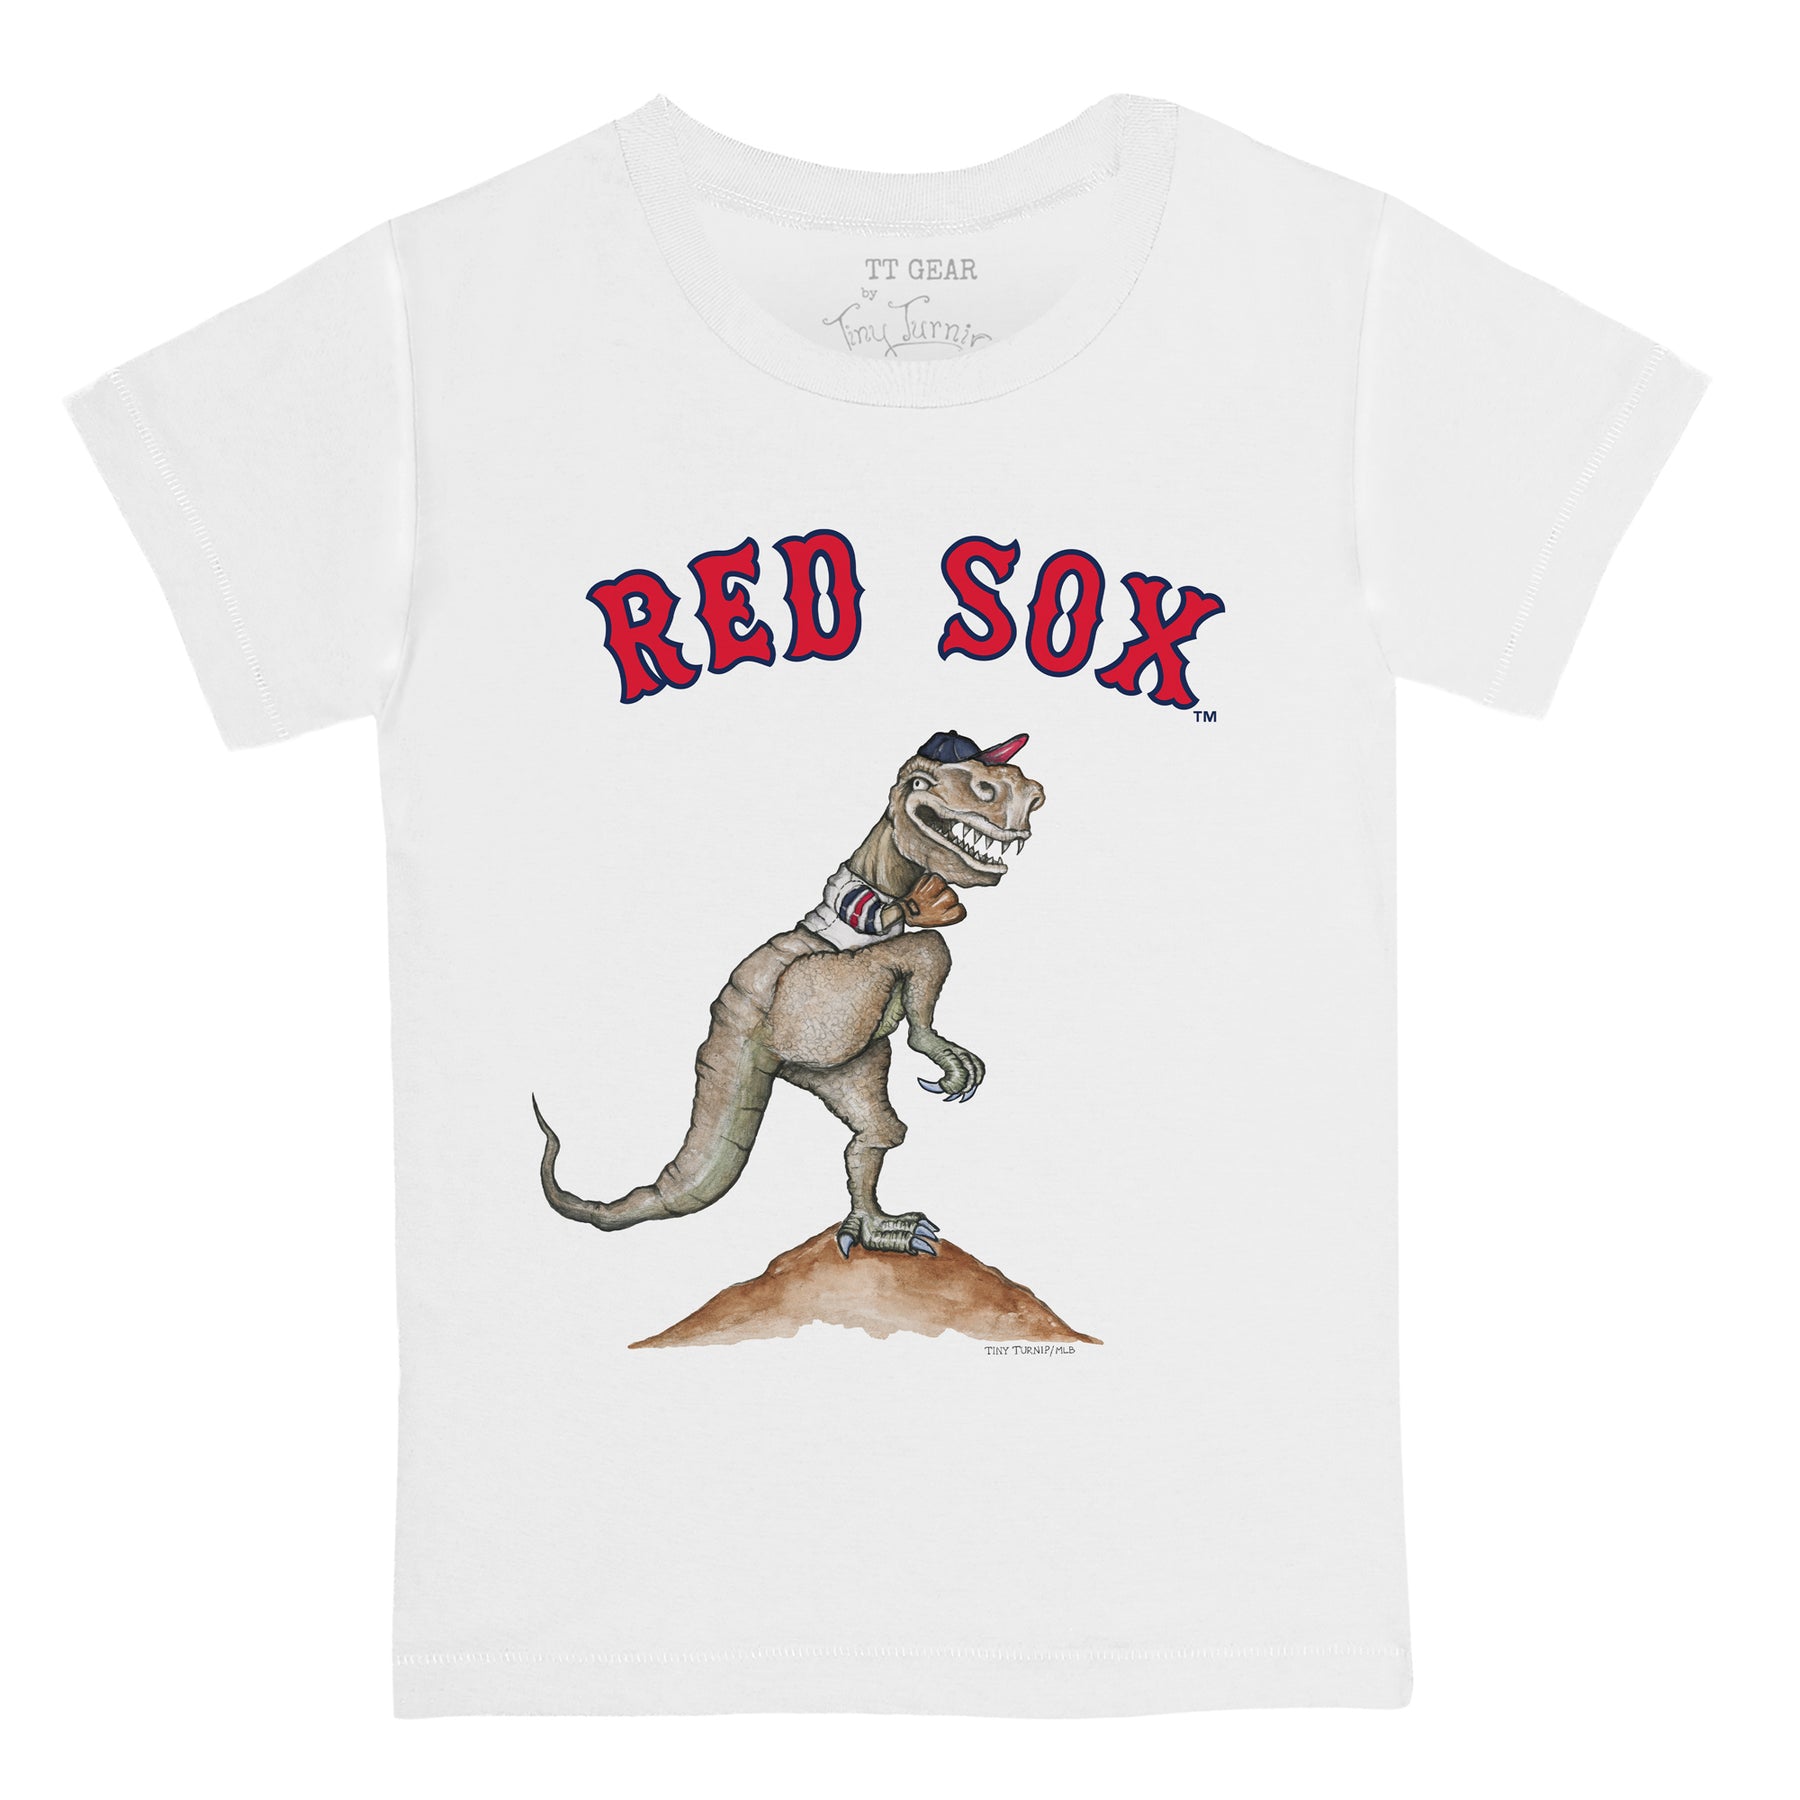 Boston Red Sox TT Rex Tee Shirt